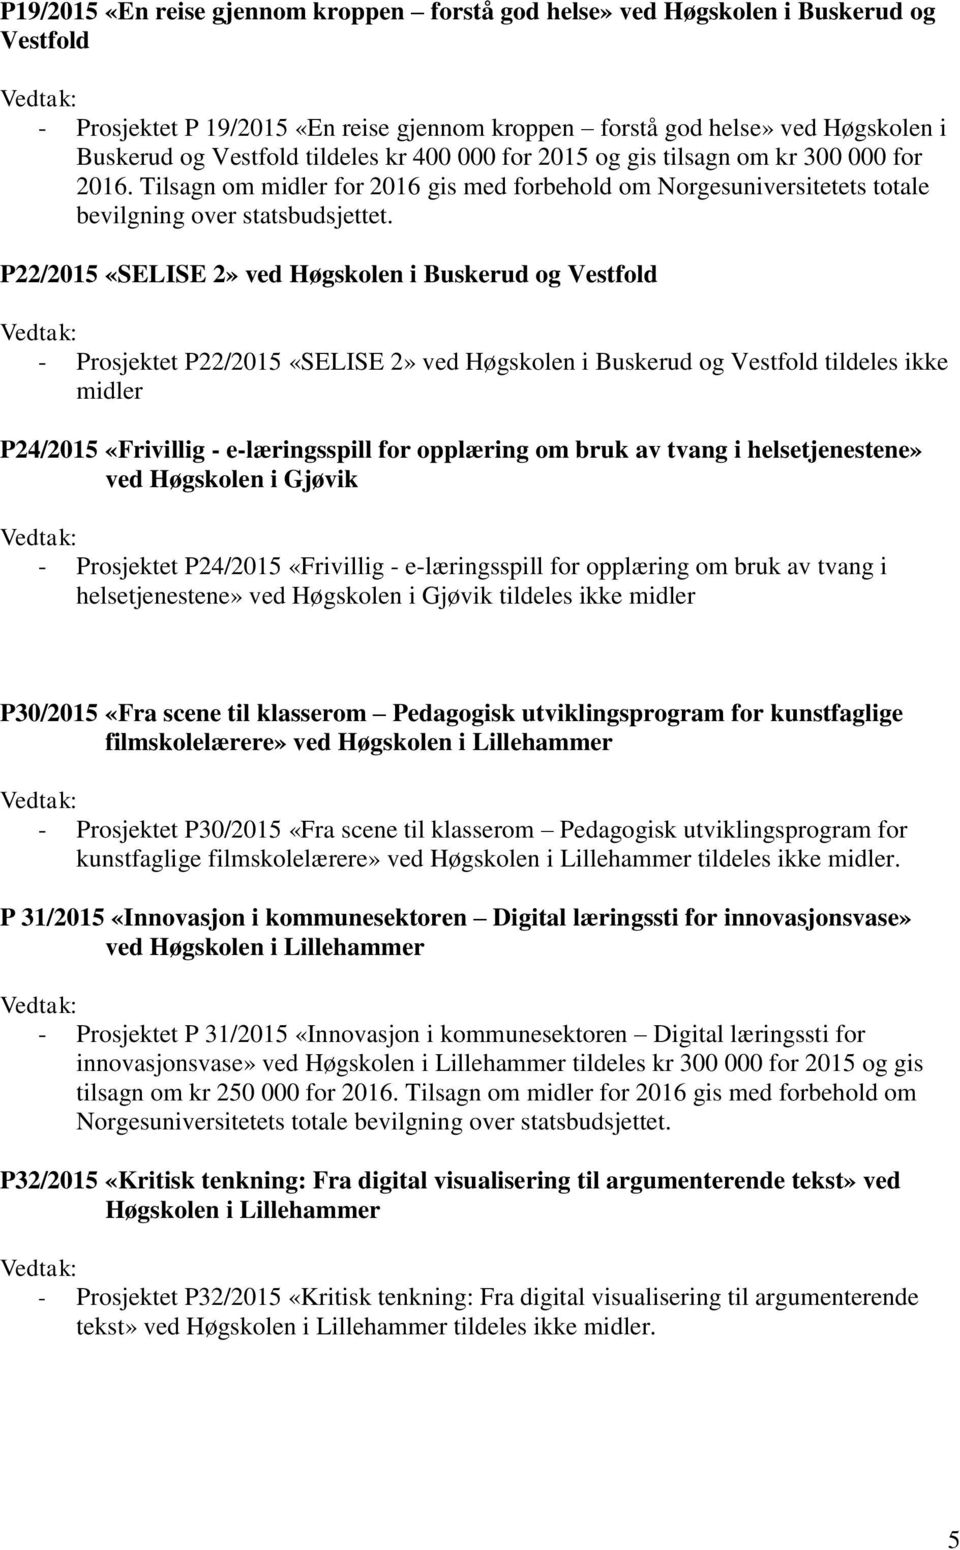 P22/2015 «SELISE 2» ved Høgskolen i Buskerud og Vestfold - Prosjektet P22/2015 «SELISE 2» ved Høgskolen i Buskerud og Vestfold tildeles ikke midler P24/2015 «Frivillig - e-læringsspill for opplæring